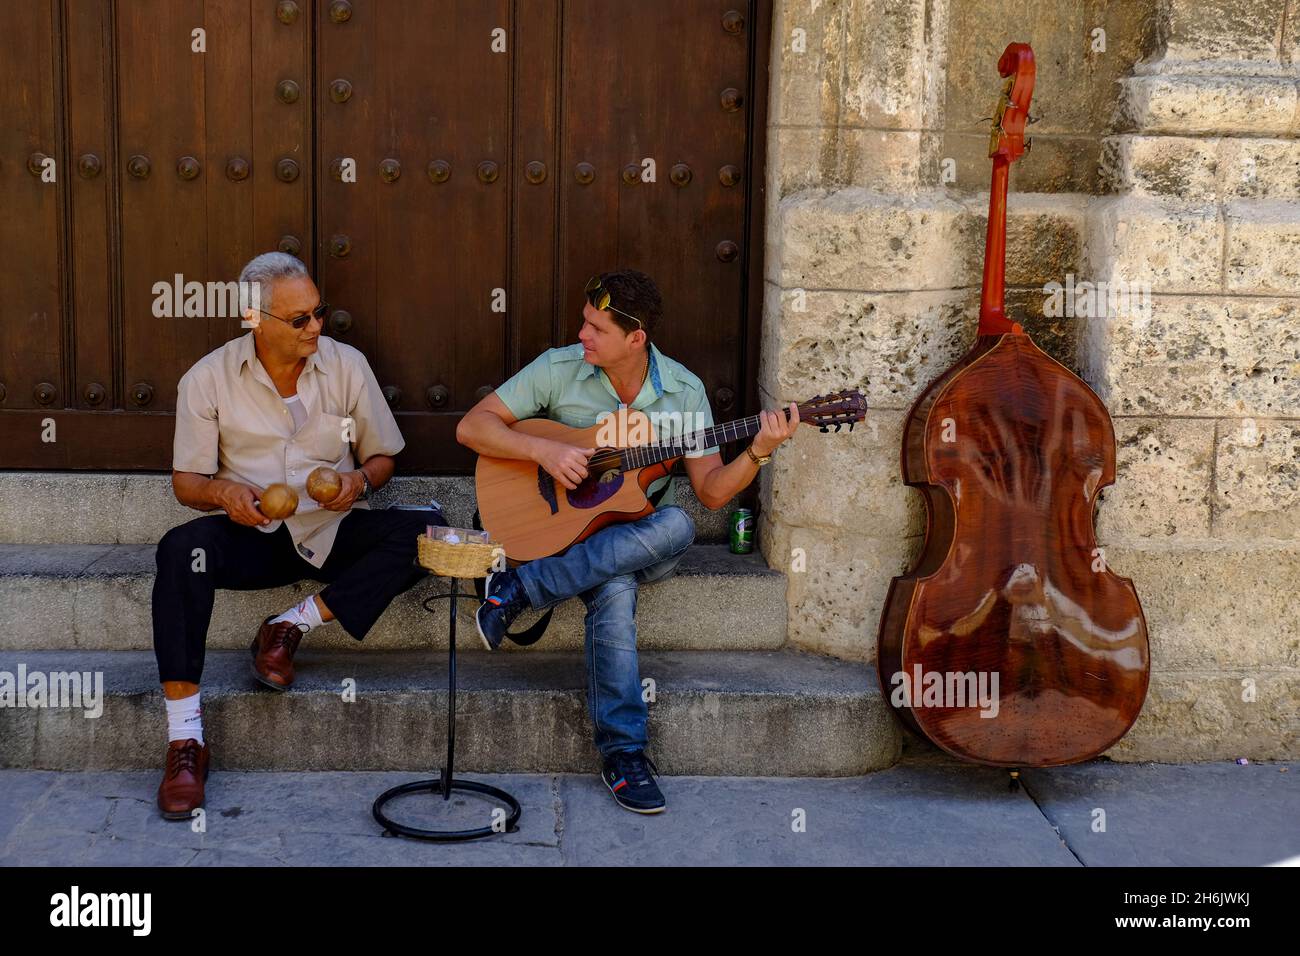 Artistas callejeros entretienen a los transeúntes, La Habana, Cuba, Indias Occidentales, Centroamérica Foto de stock